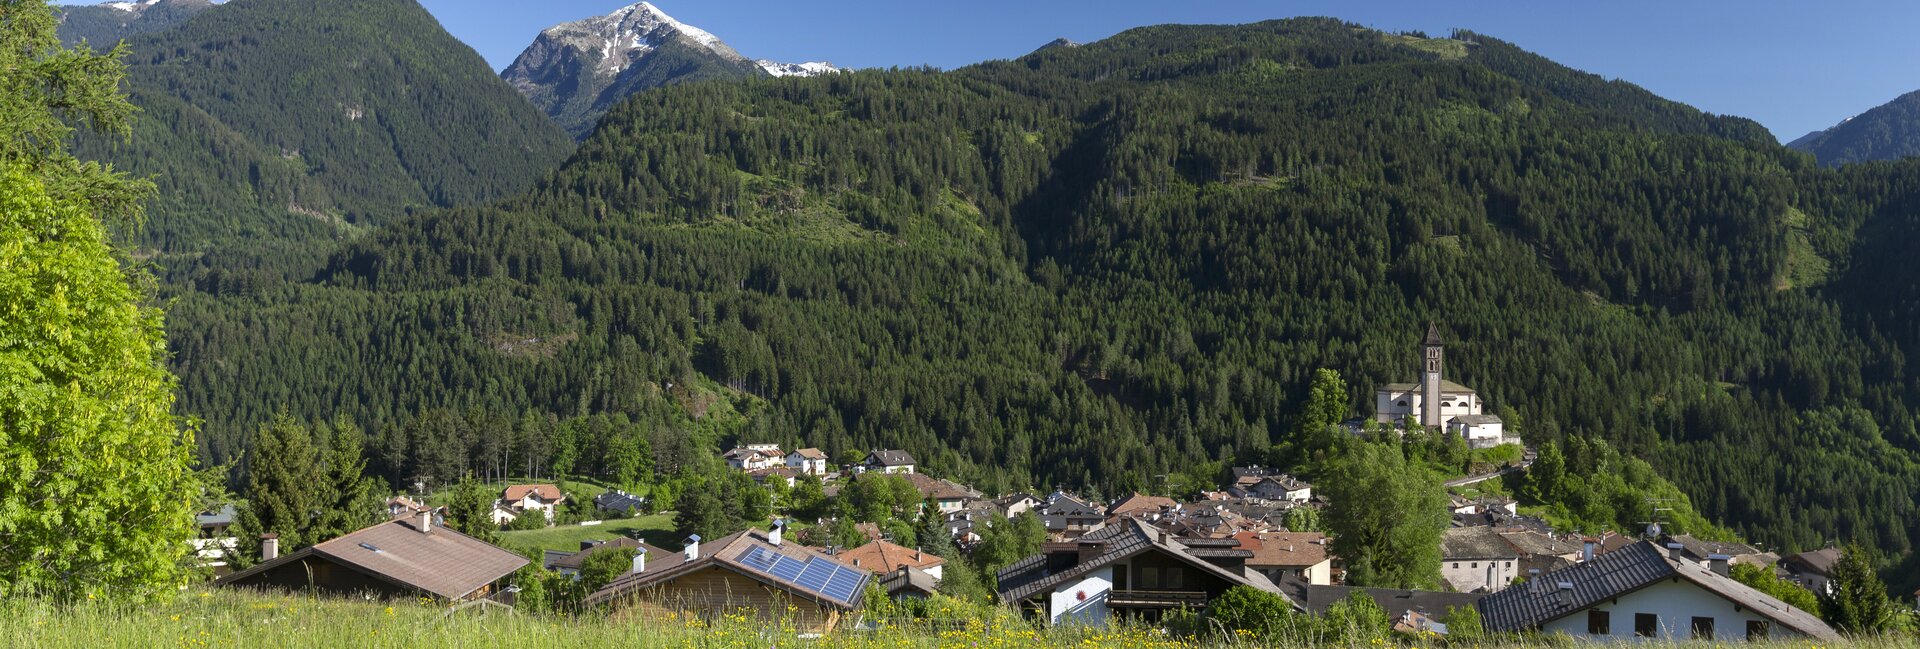 Cavalese - Sport a odpočinek v srdci údolí Val di Fiemme